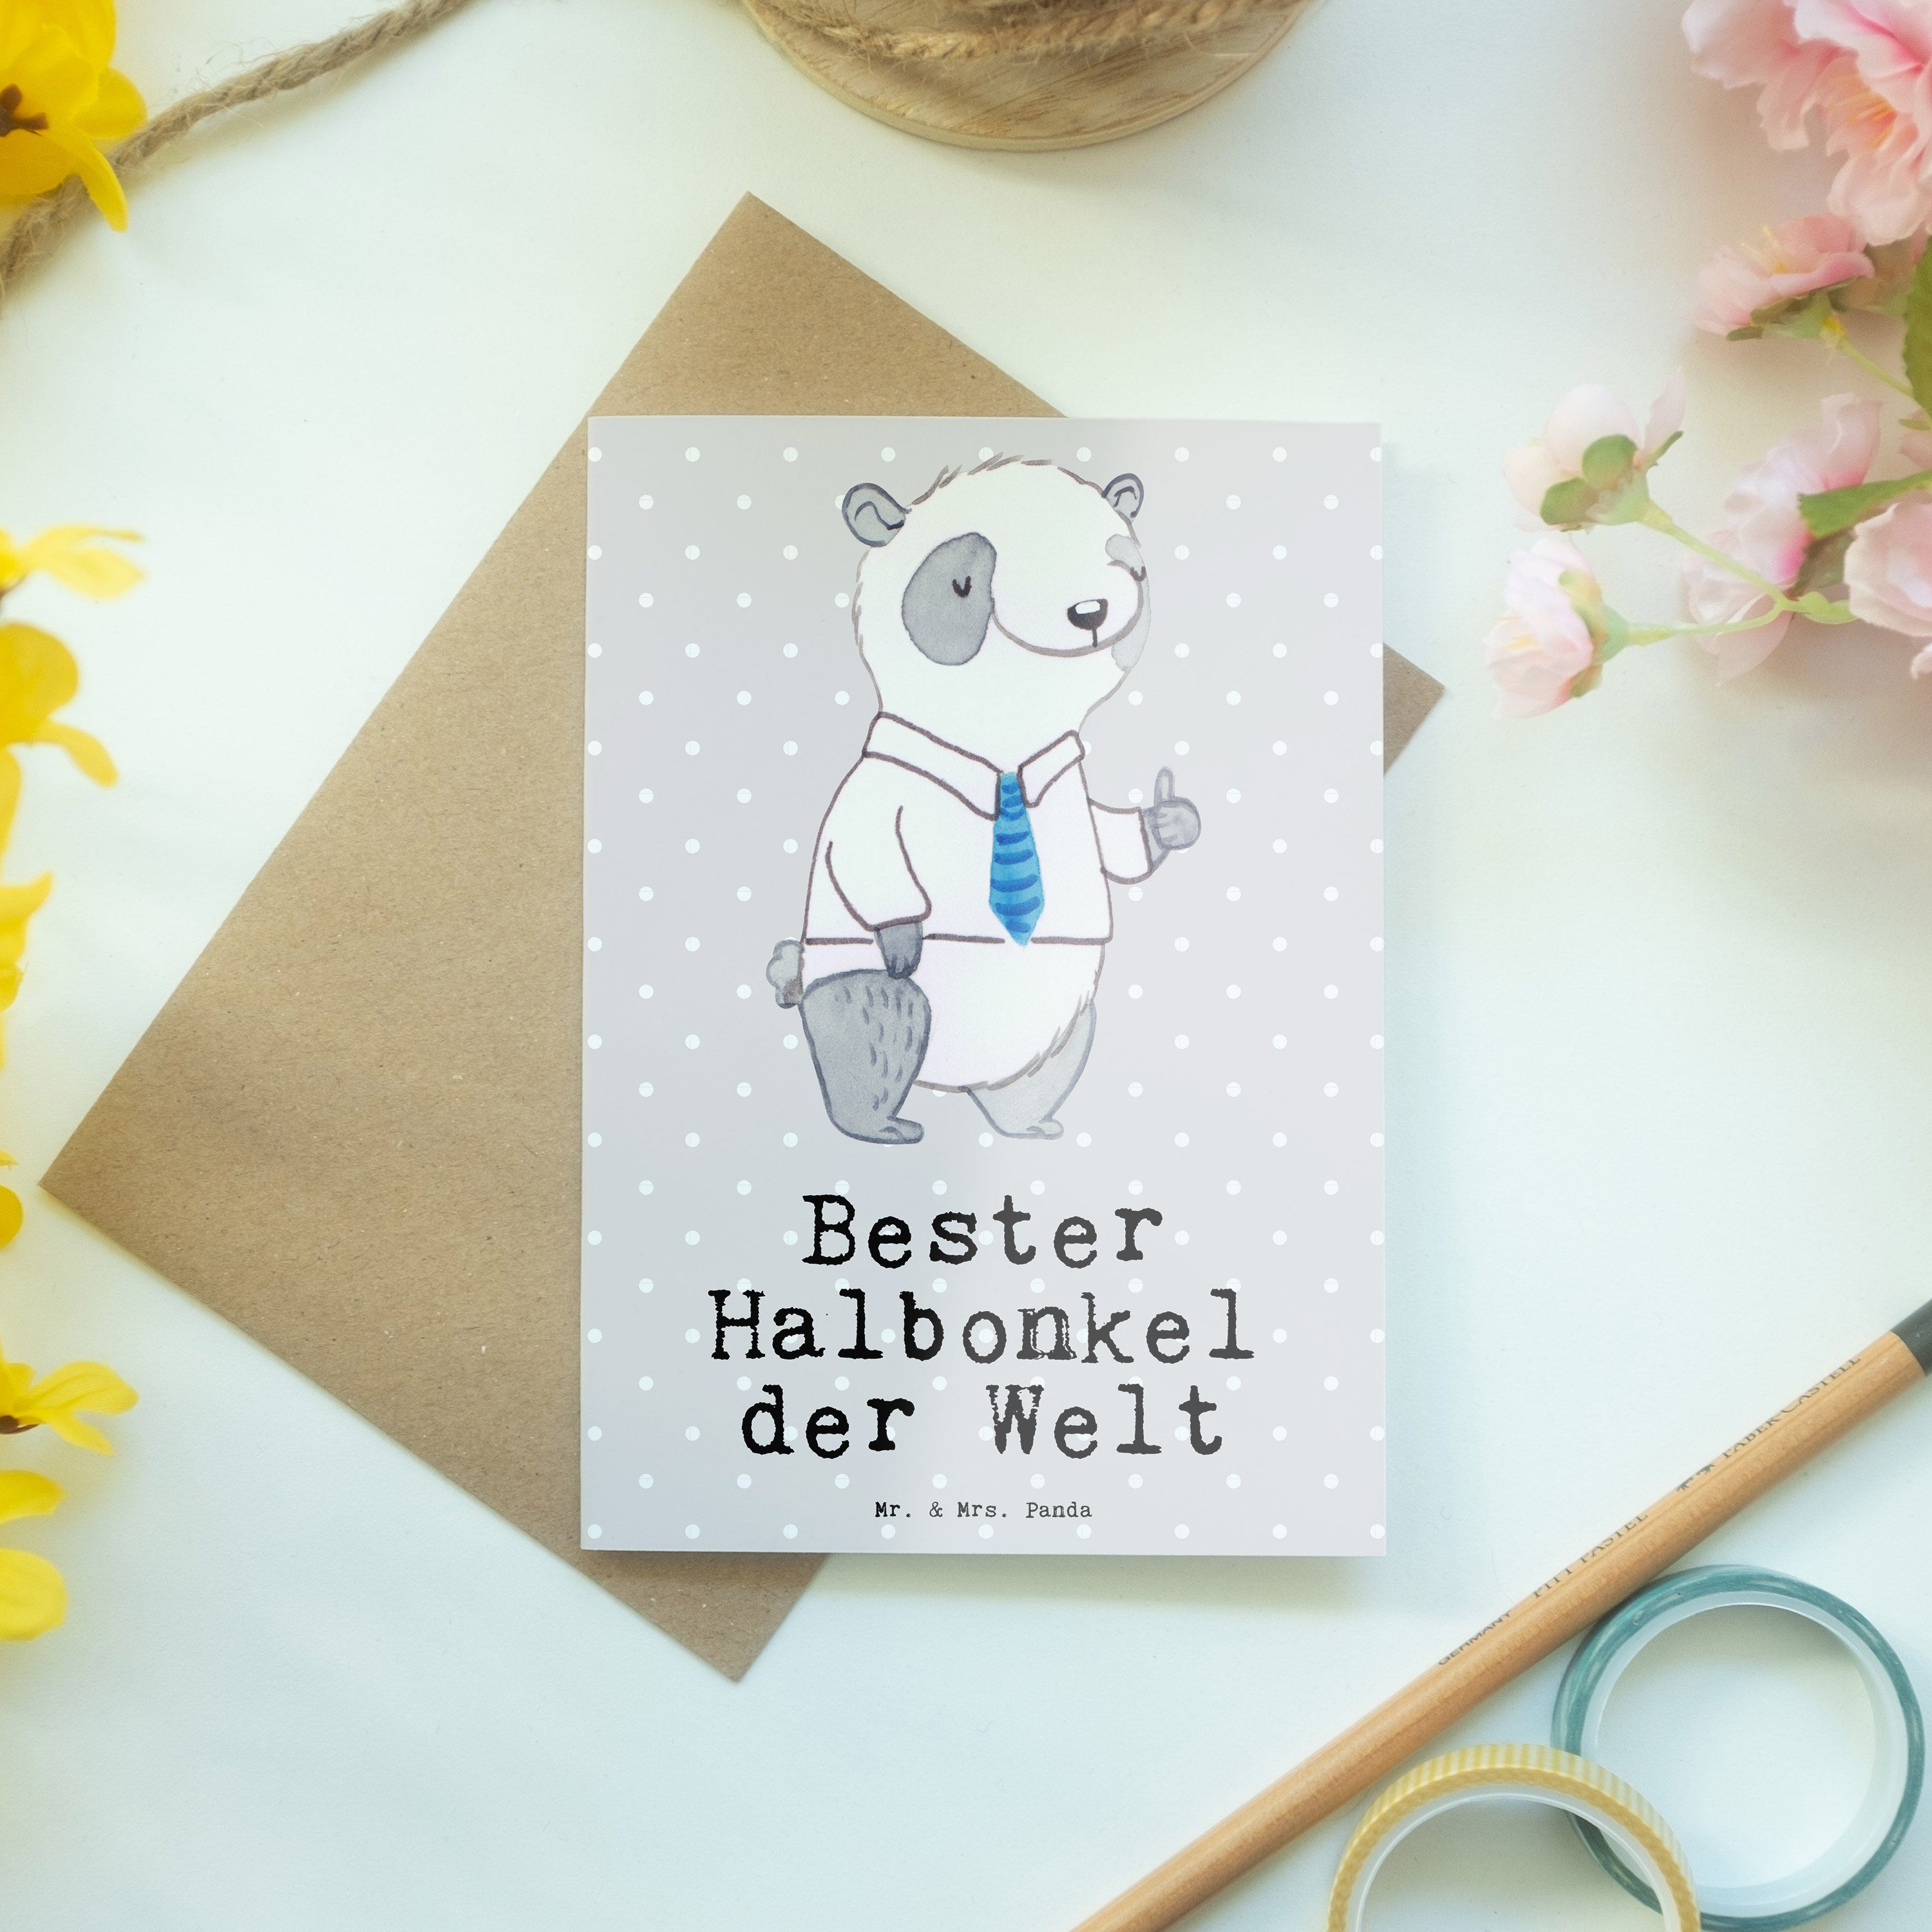 Mr. & Mrs. Grau - Kleinigkei Grußkarte Panda der Bester - Halbonkel Geschenk, Panda Welt Pastell